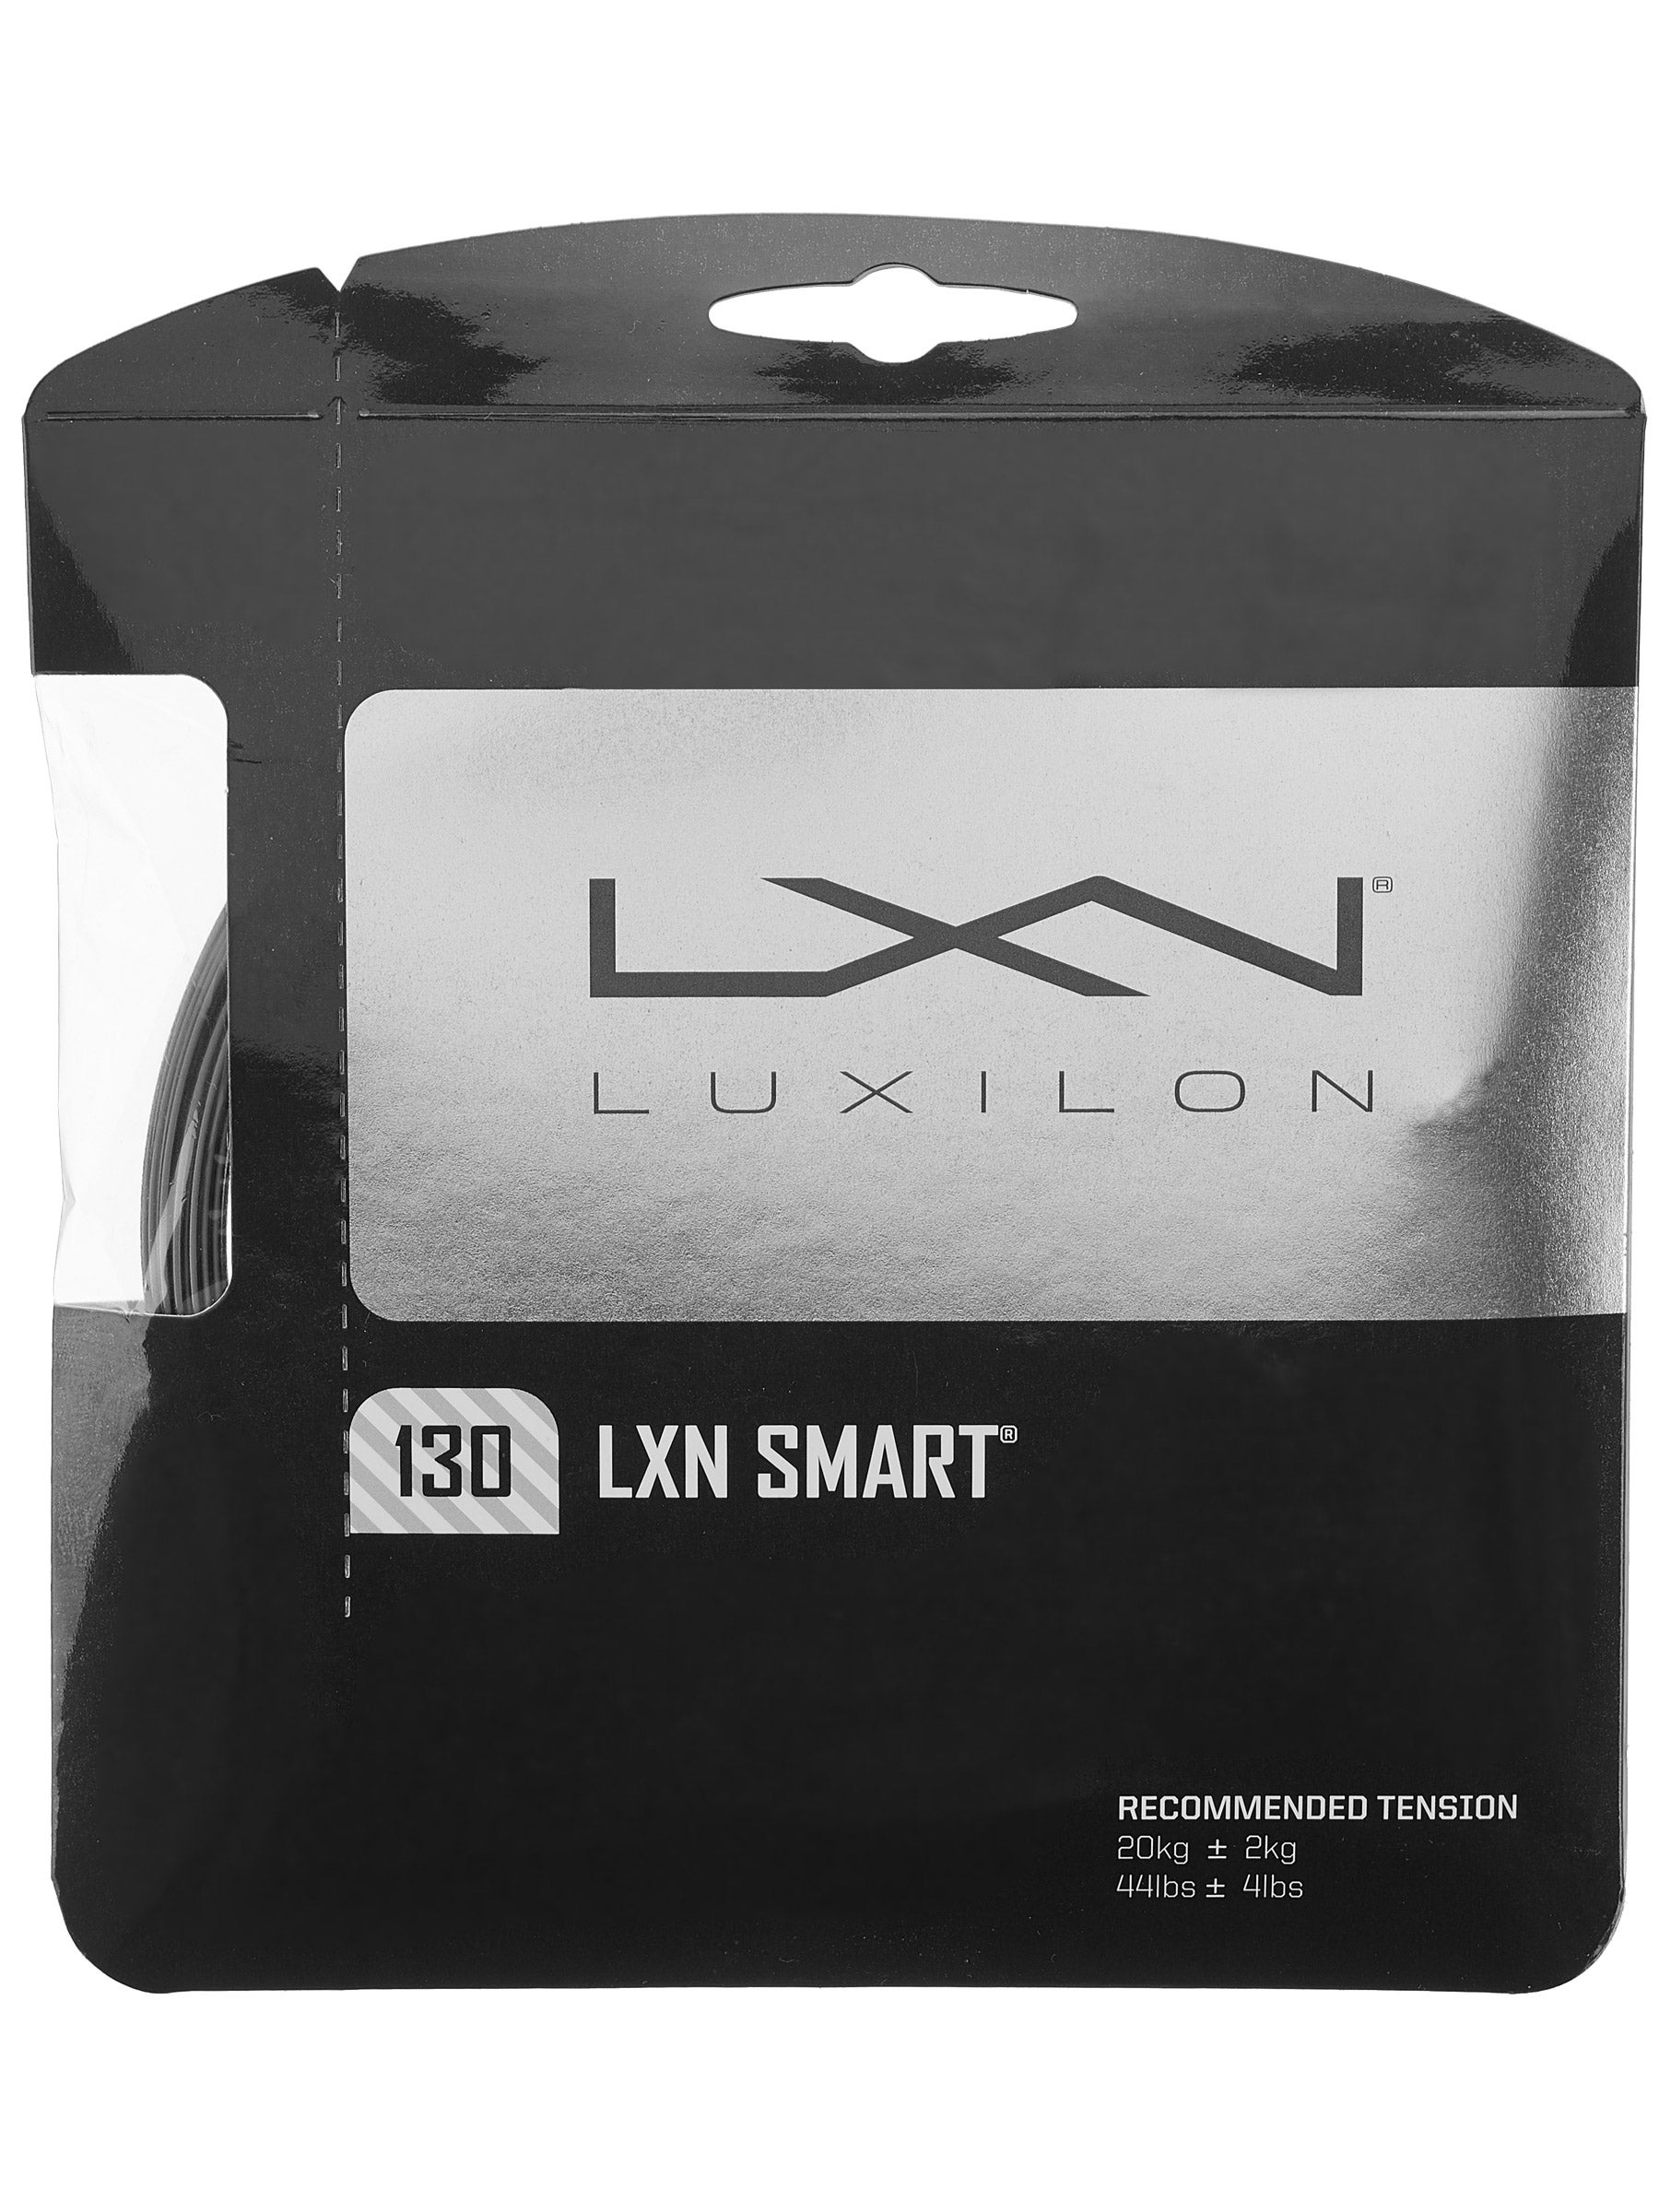 Luxilon LXN Smart 12m/40ft 